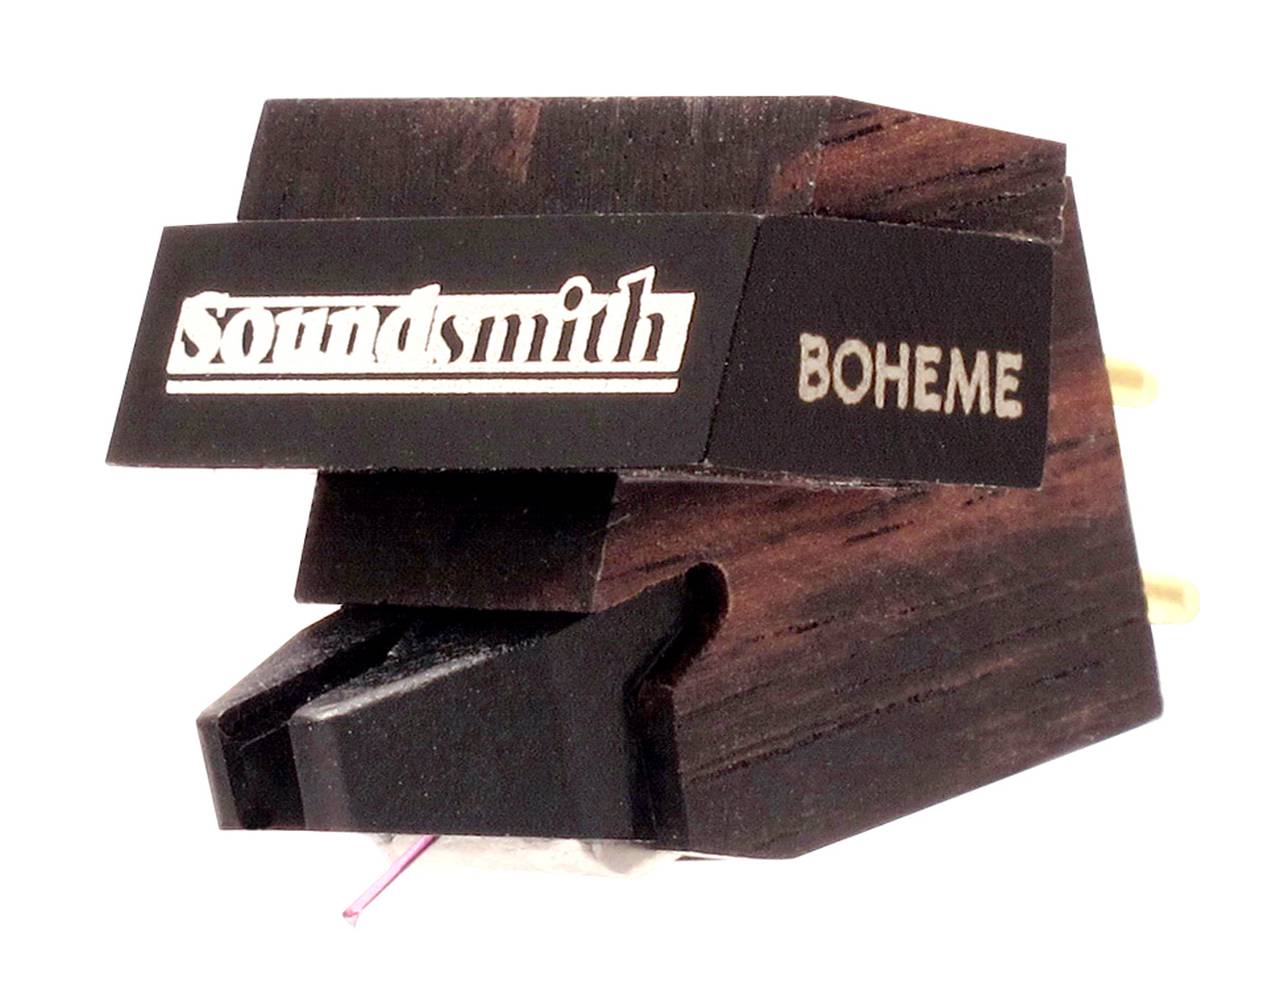 Soundsmith Boheme